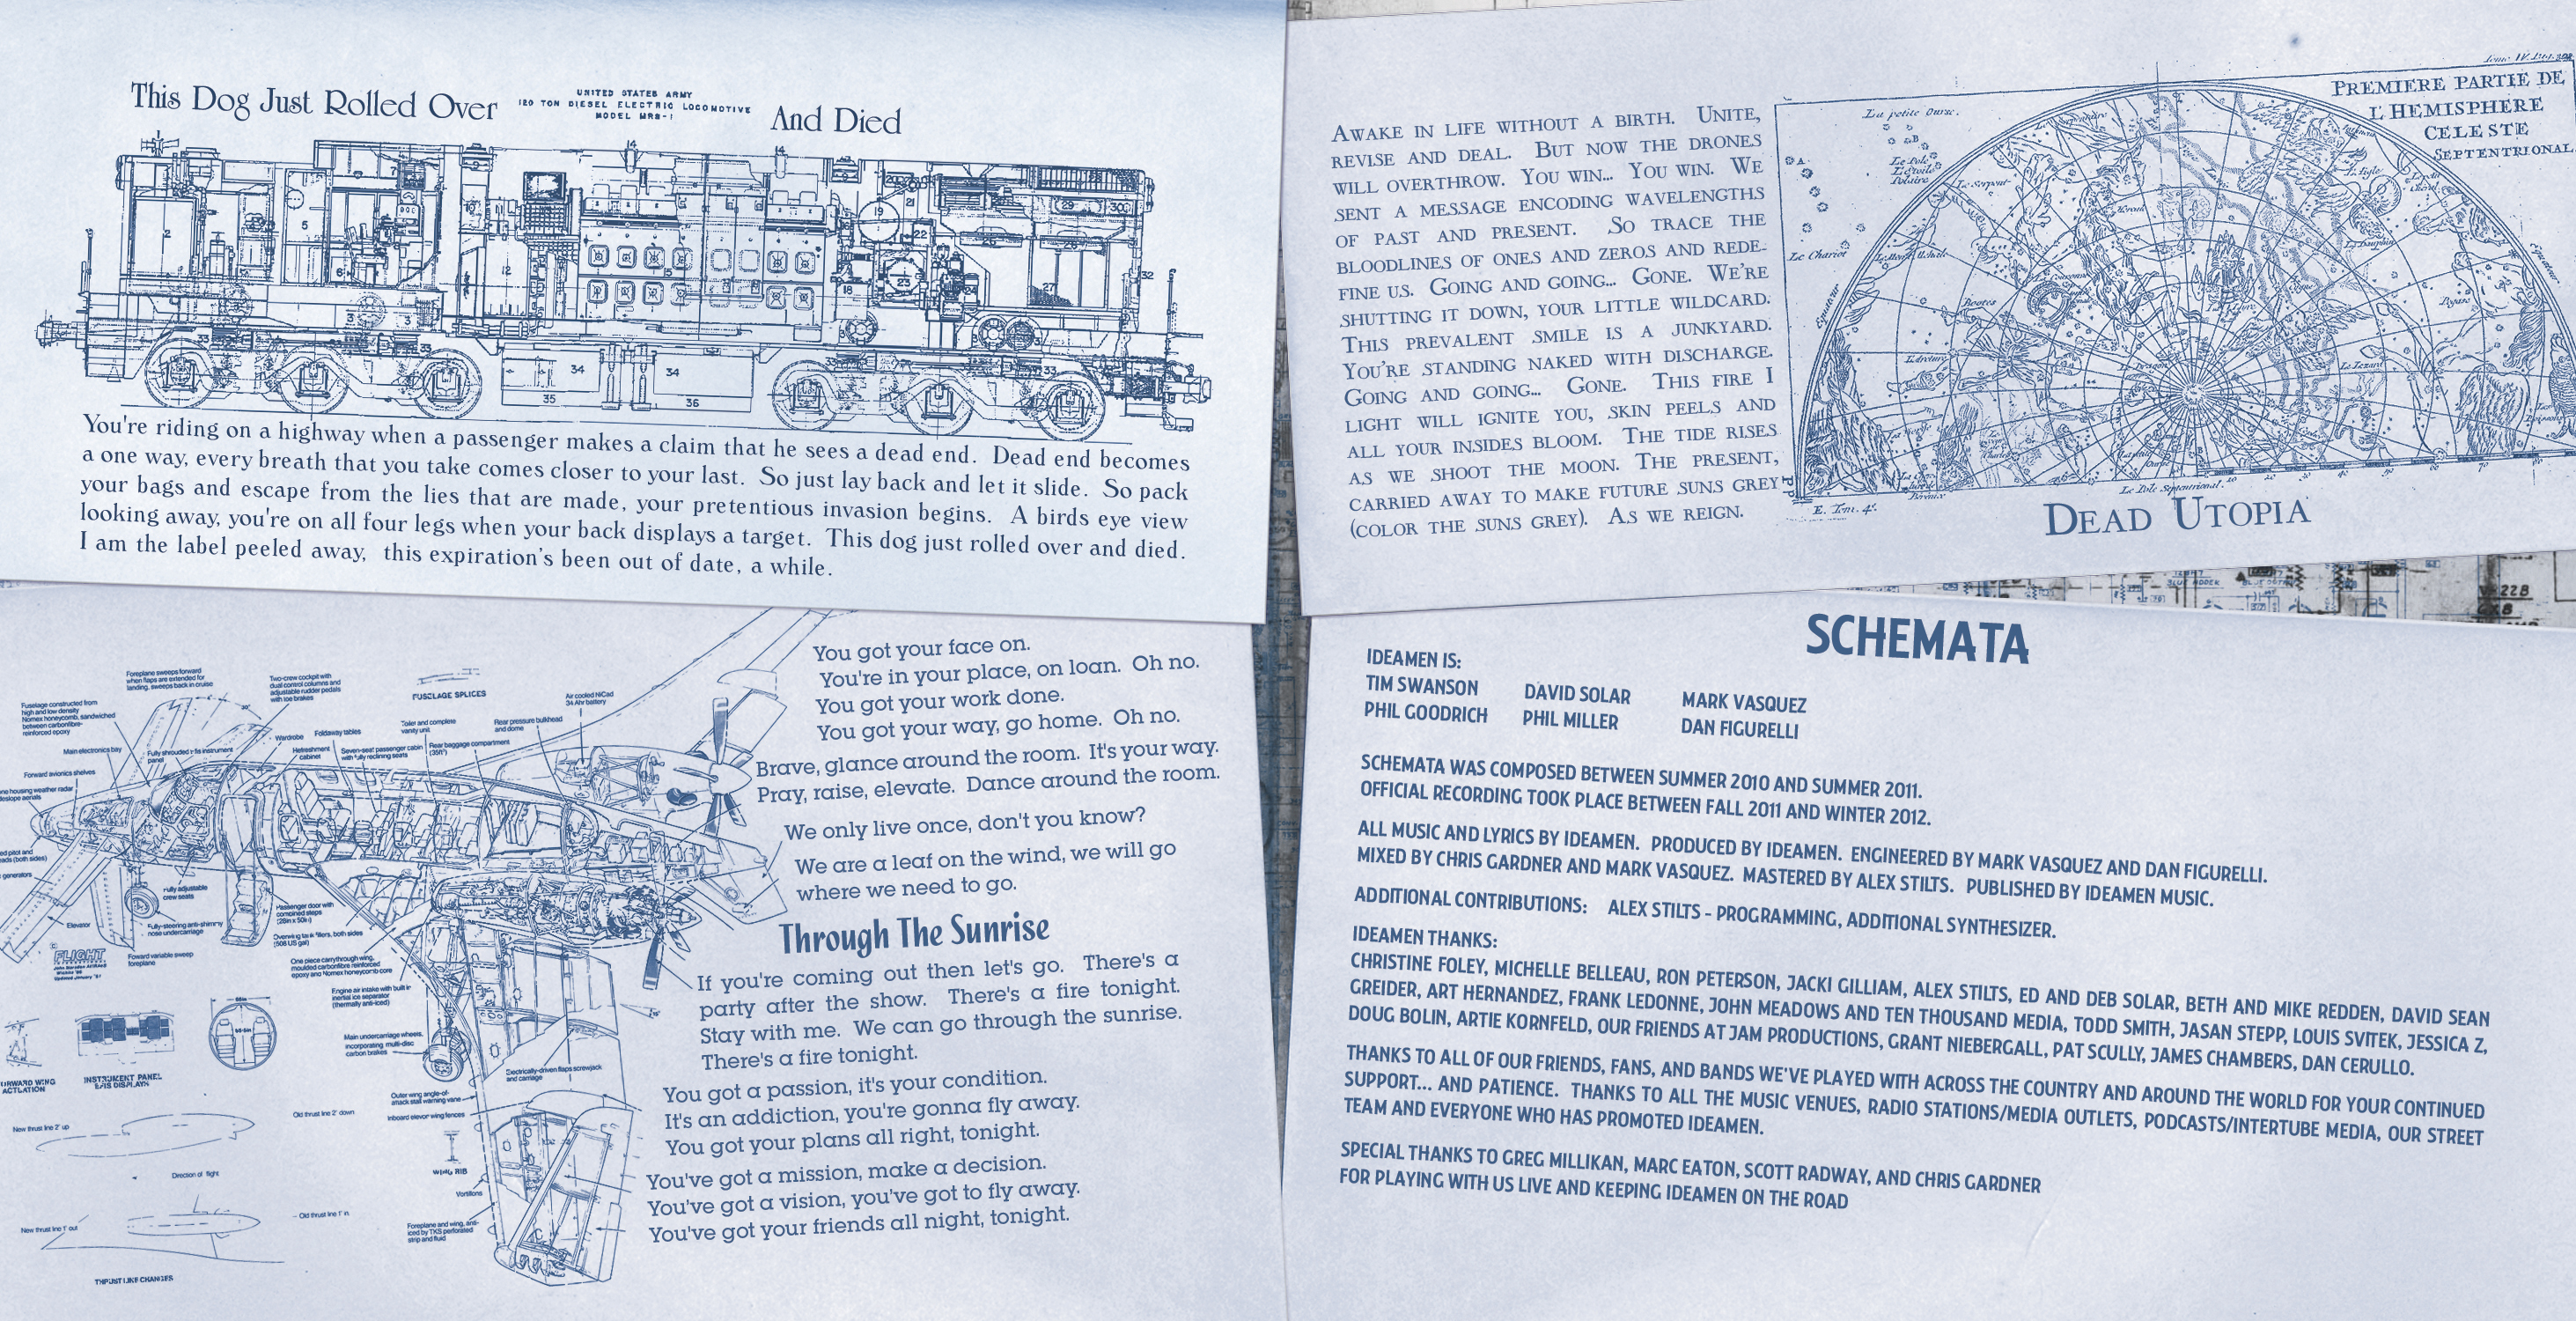 schemata-insert-page-5-6